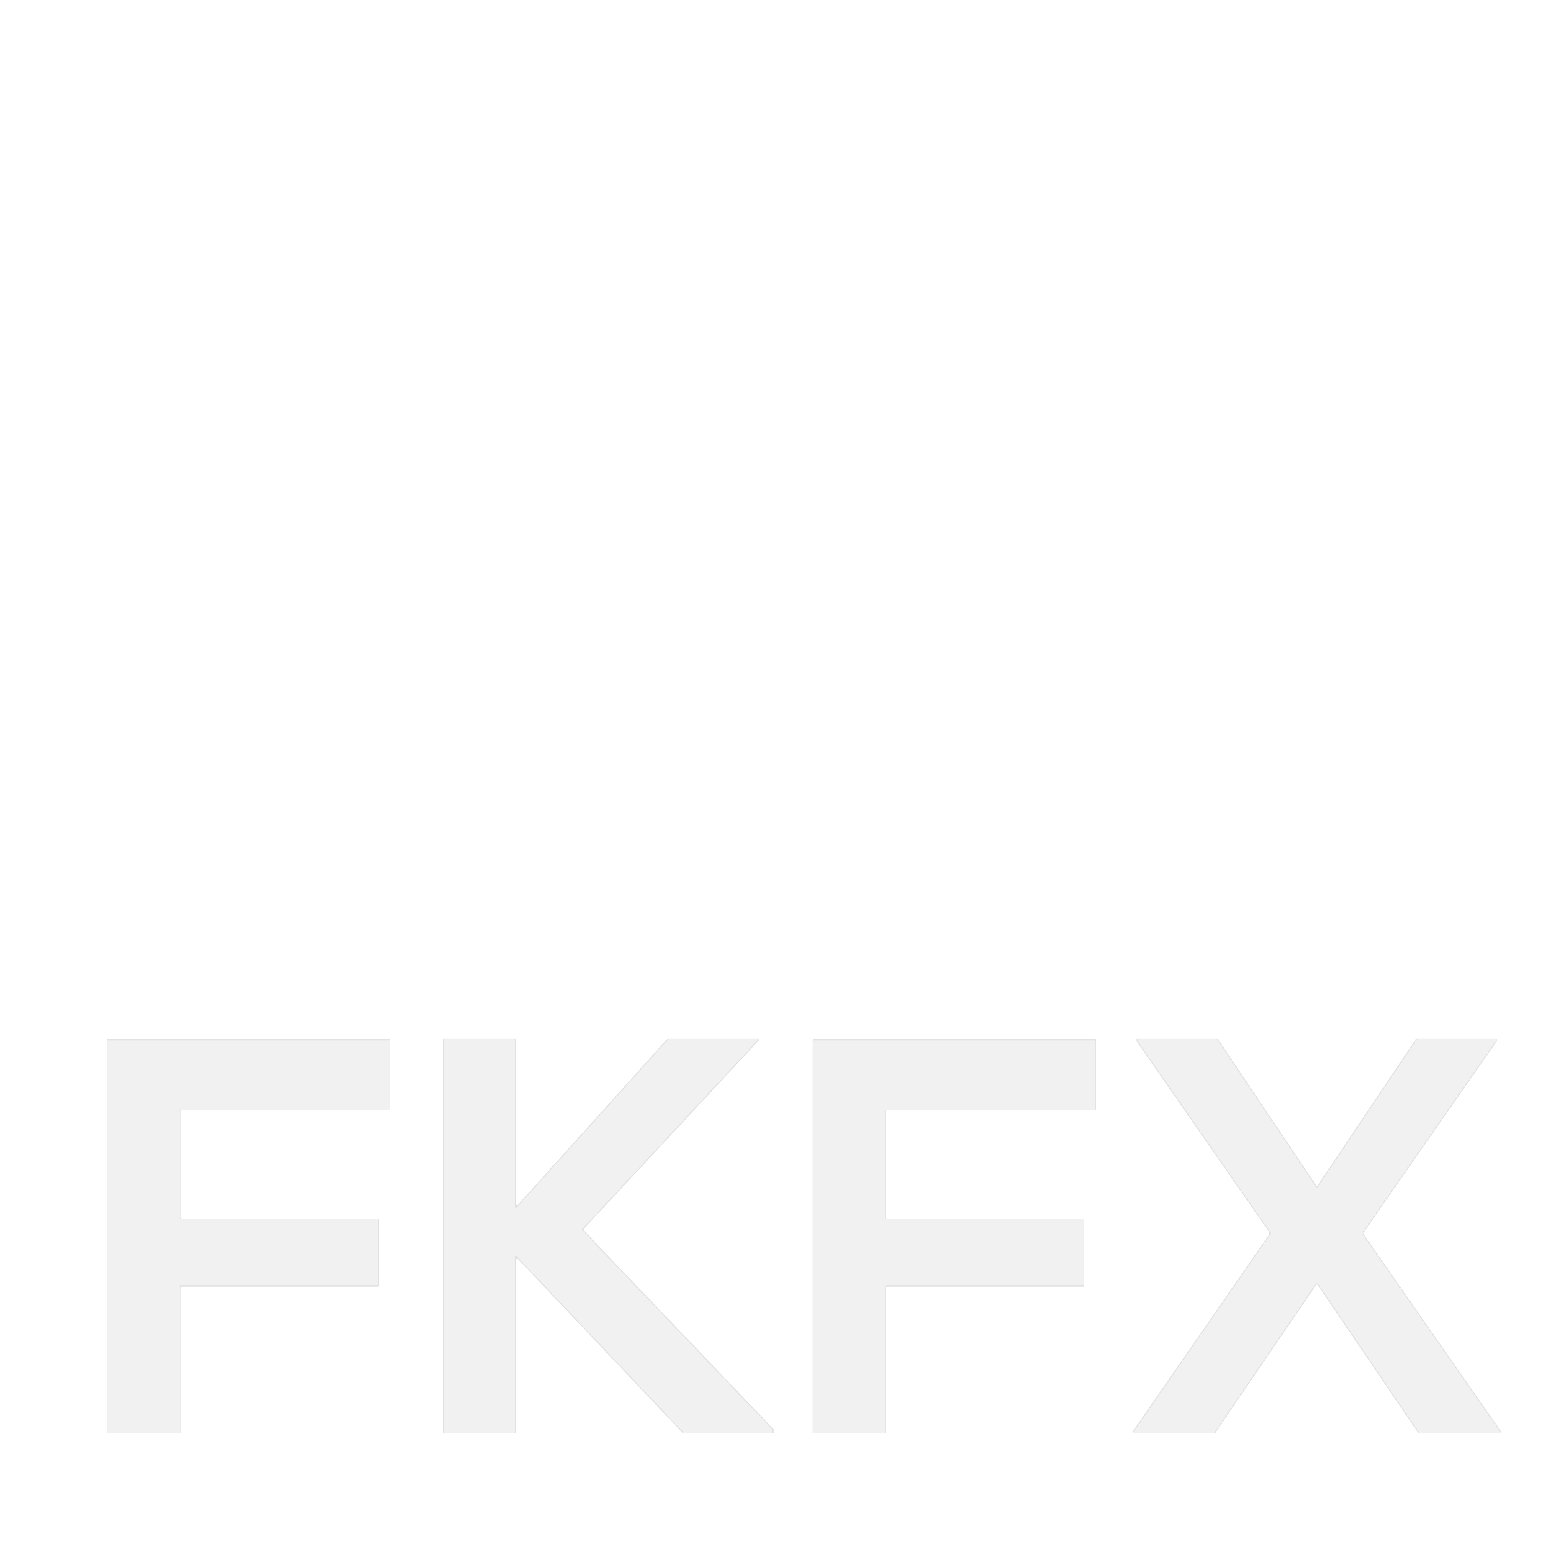 FKFX